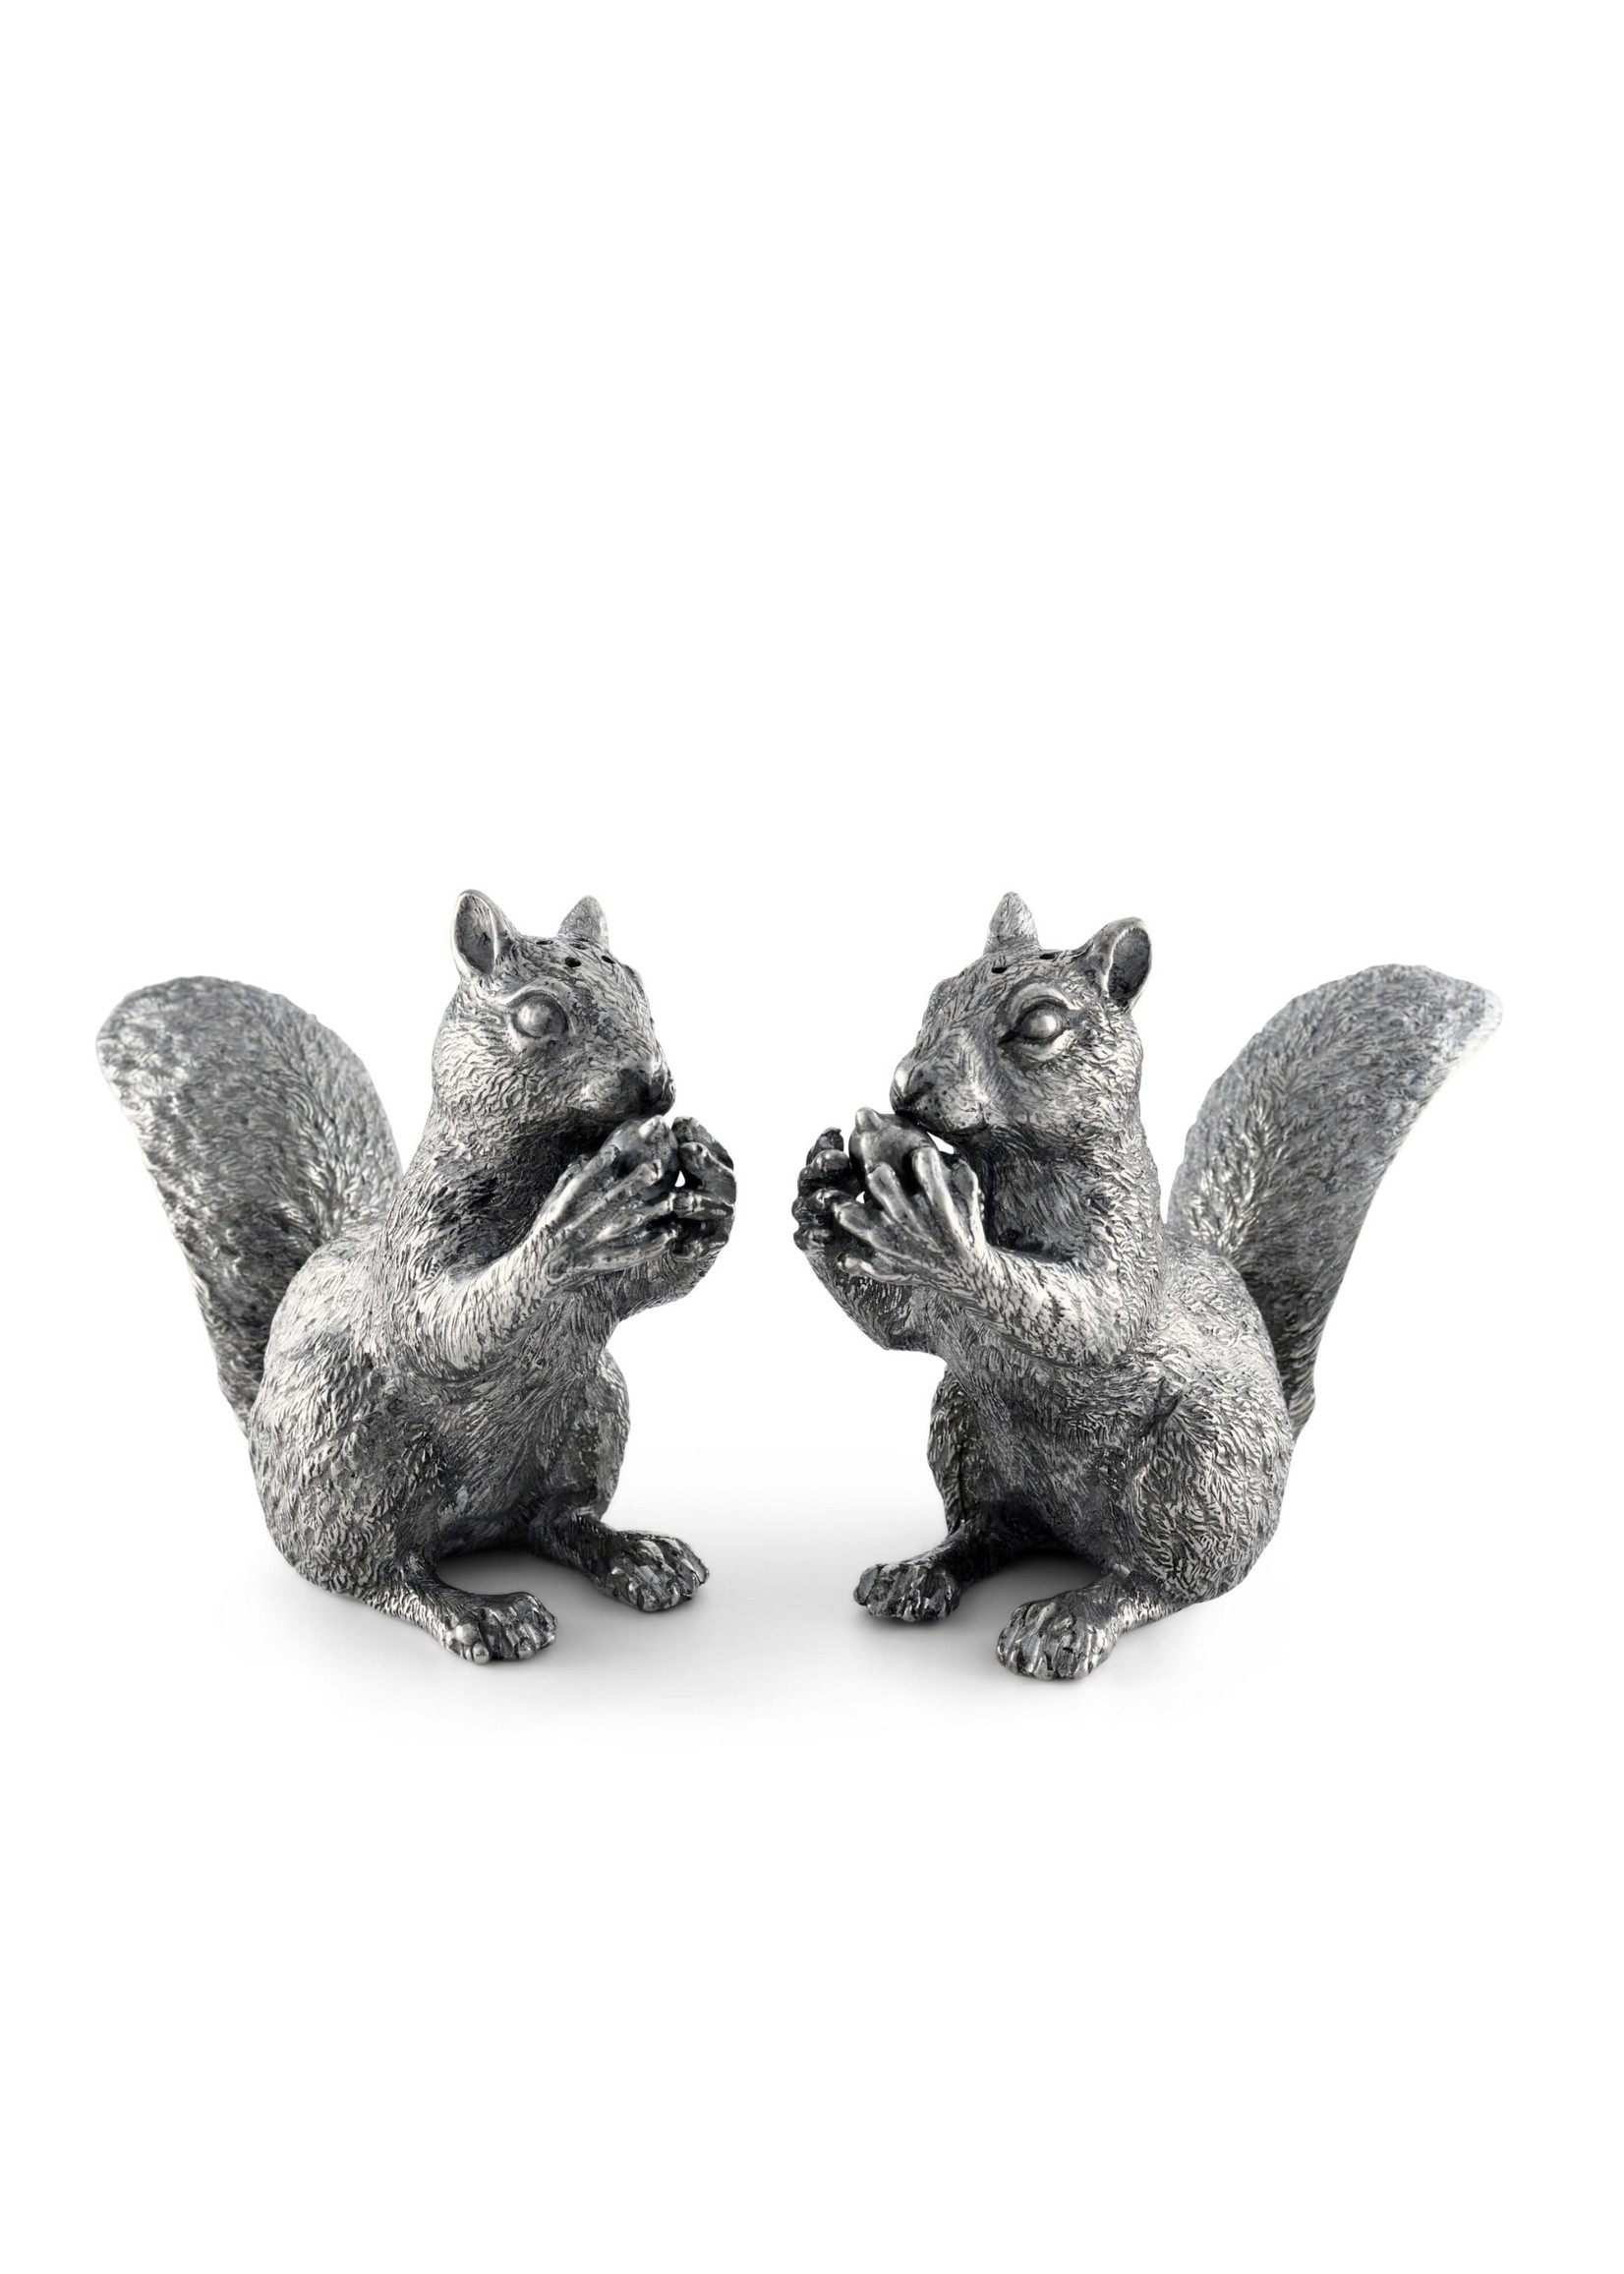 Salt & Pepper Set - Squirrels